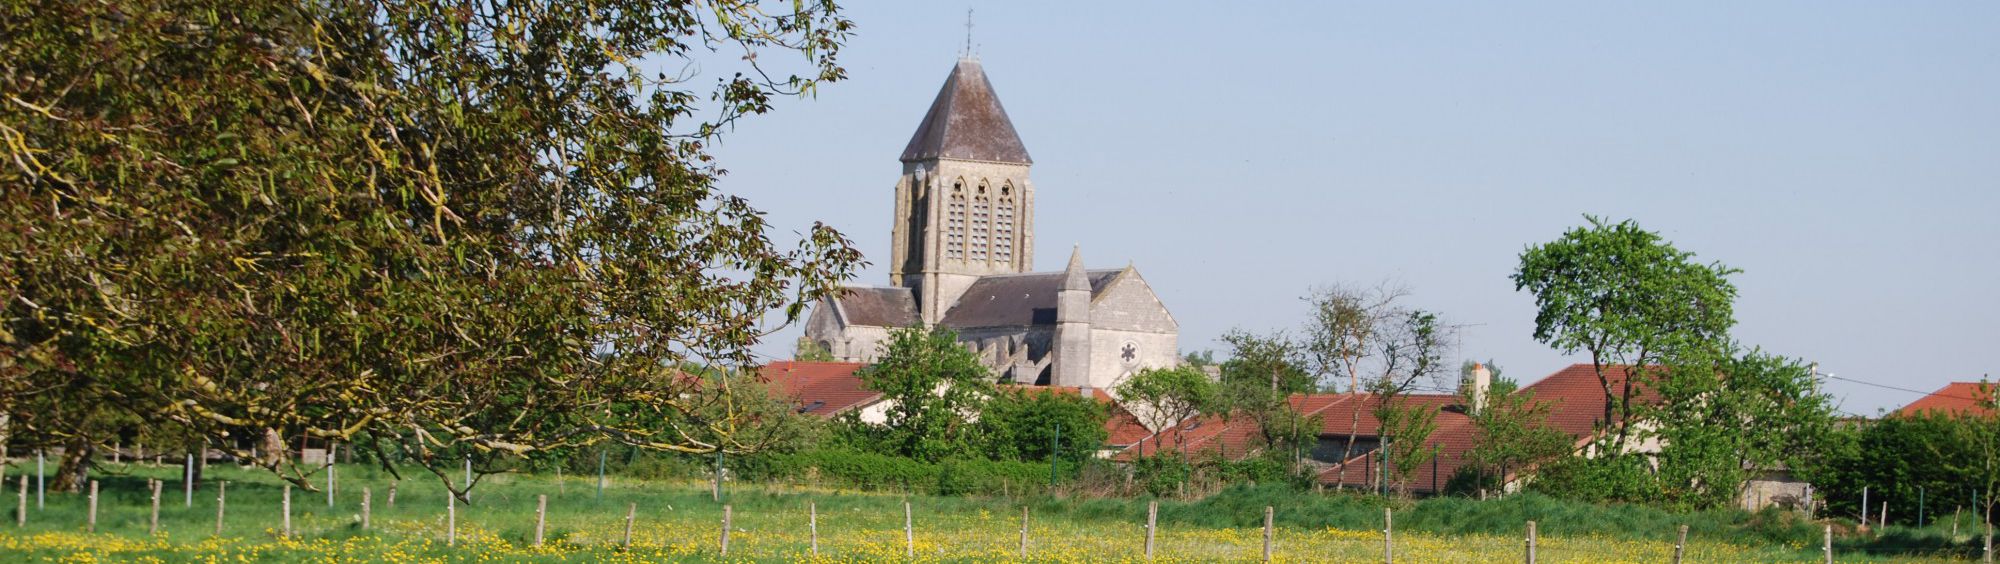 Notre-Dame de Blécourt